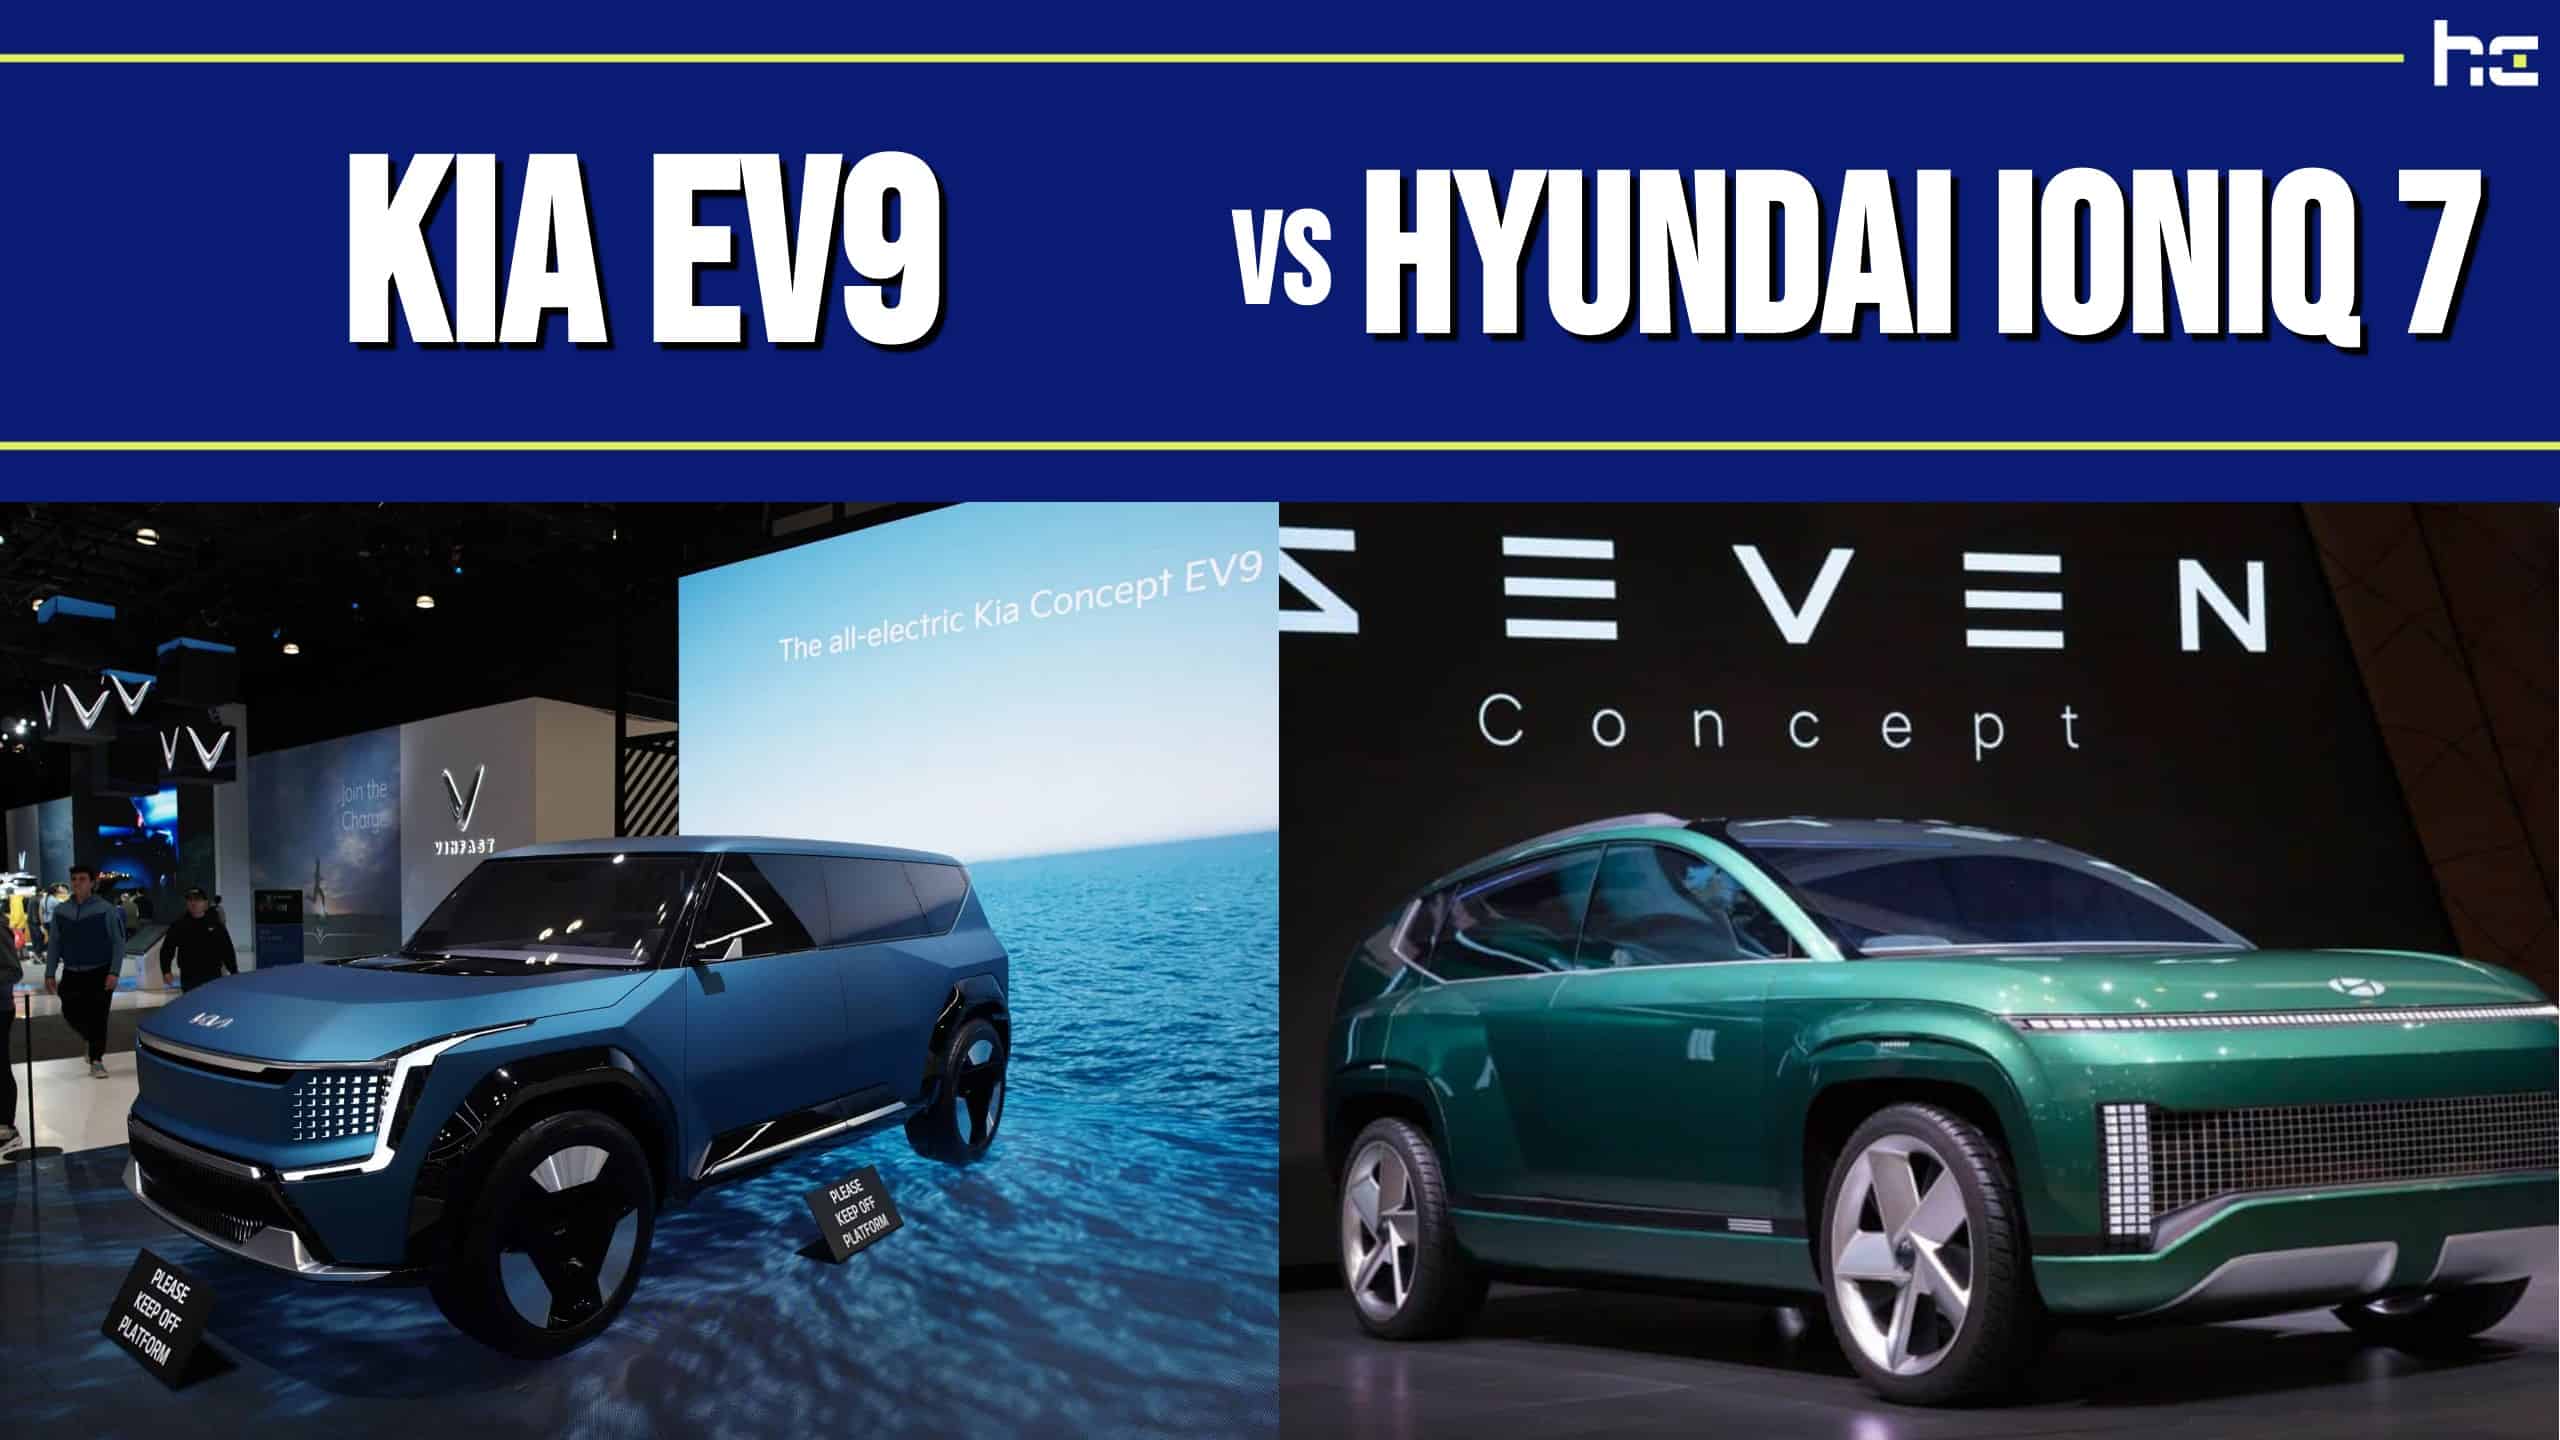 featured image for Kia EV9 vs Hyundai Ioniq 7